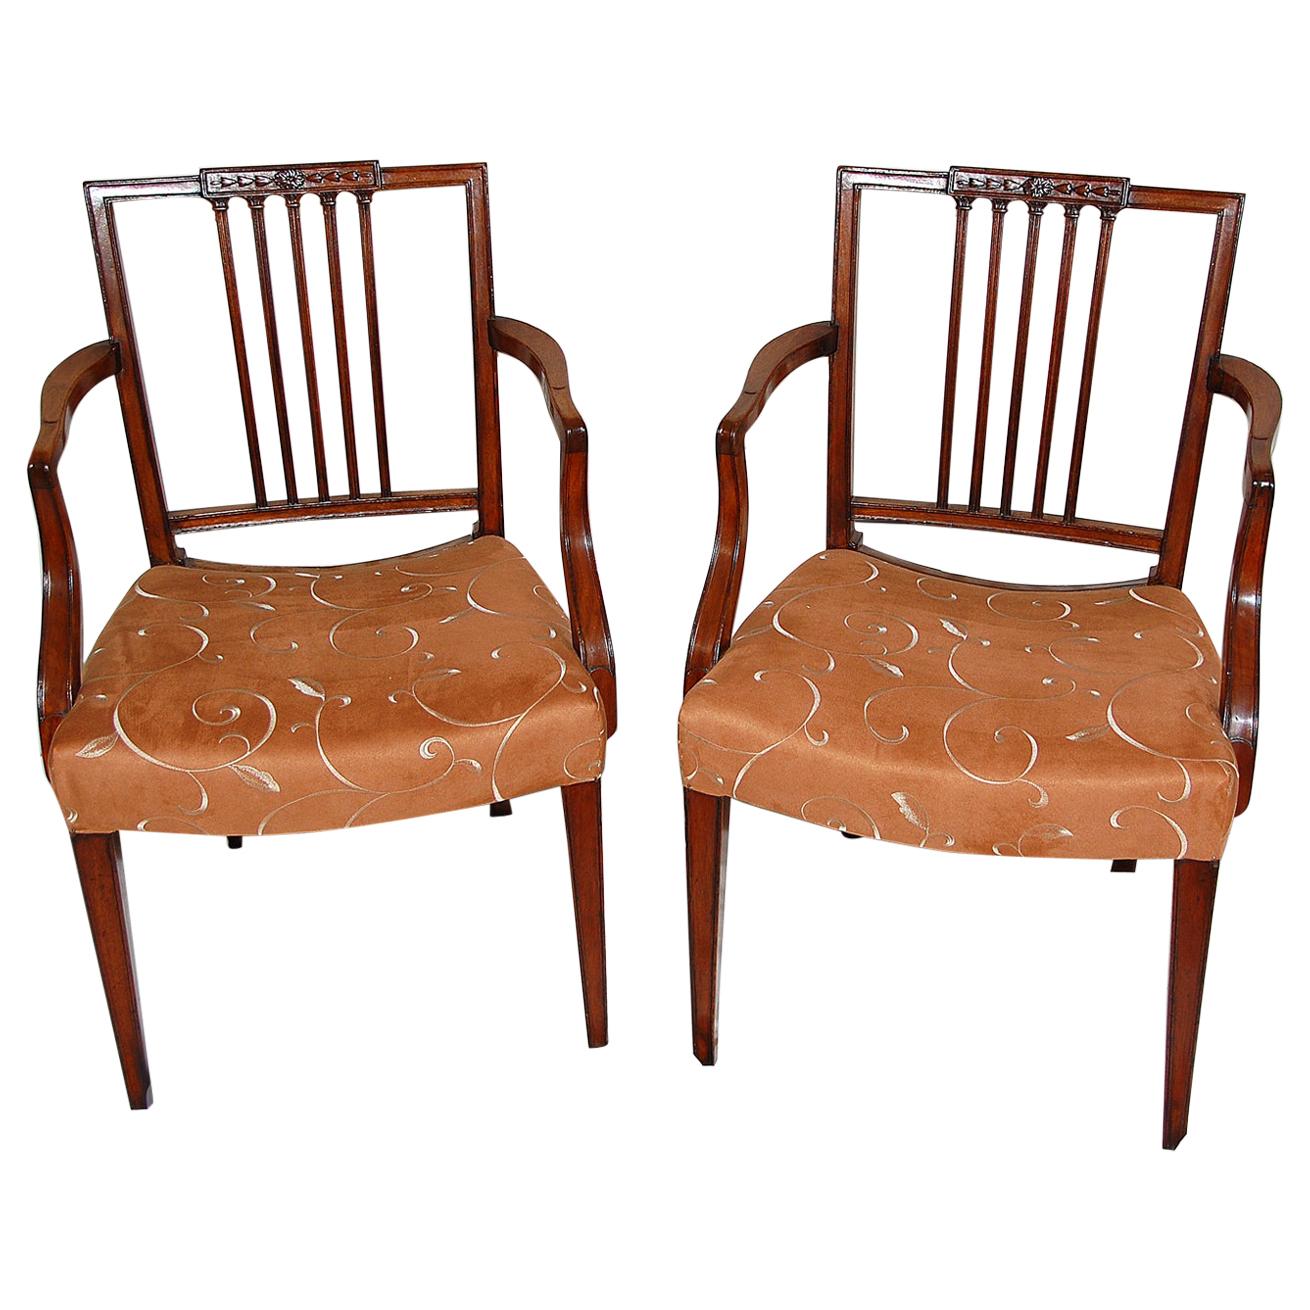 Englisches Mahagoni Sheraton Sesselpaar aus der georgianischen Zeit Quadratische geschnitzte Rückenlehne